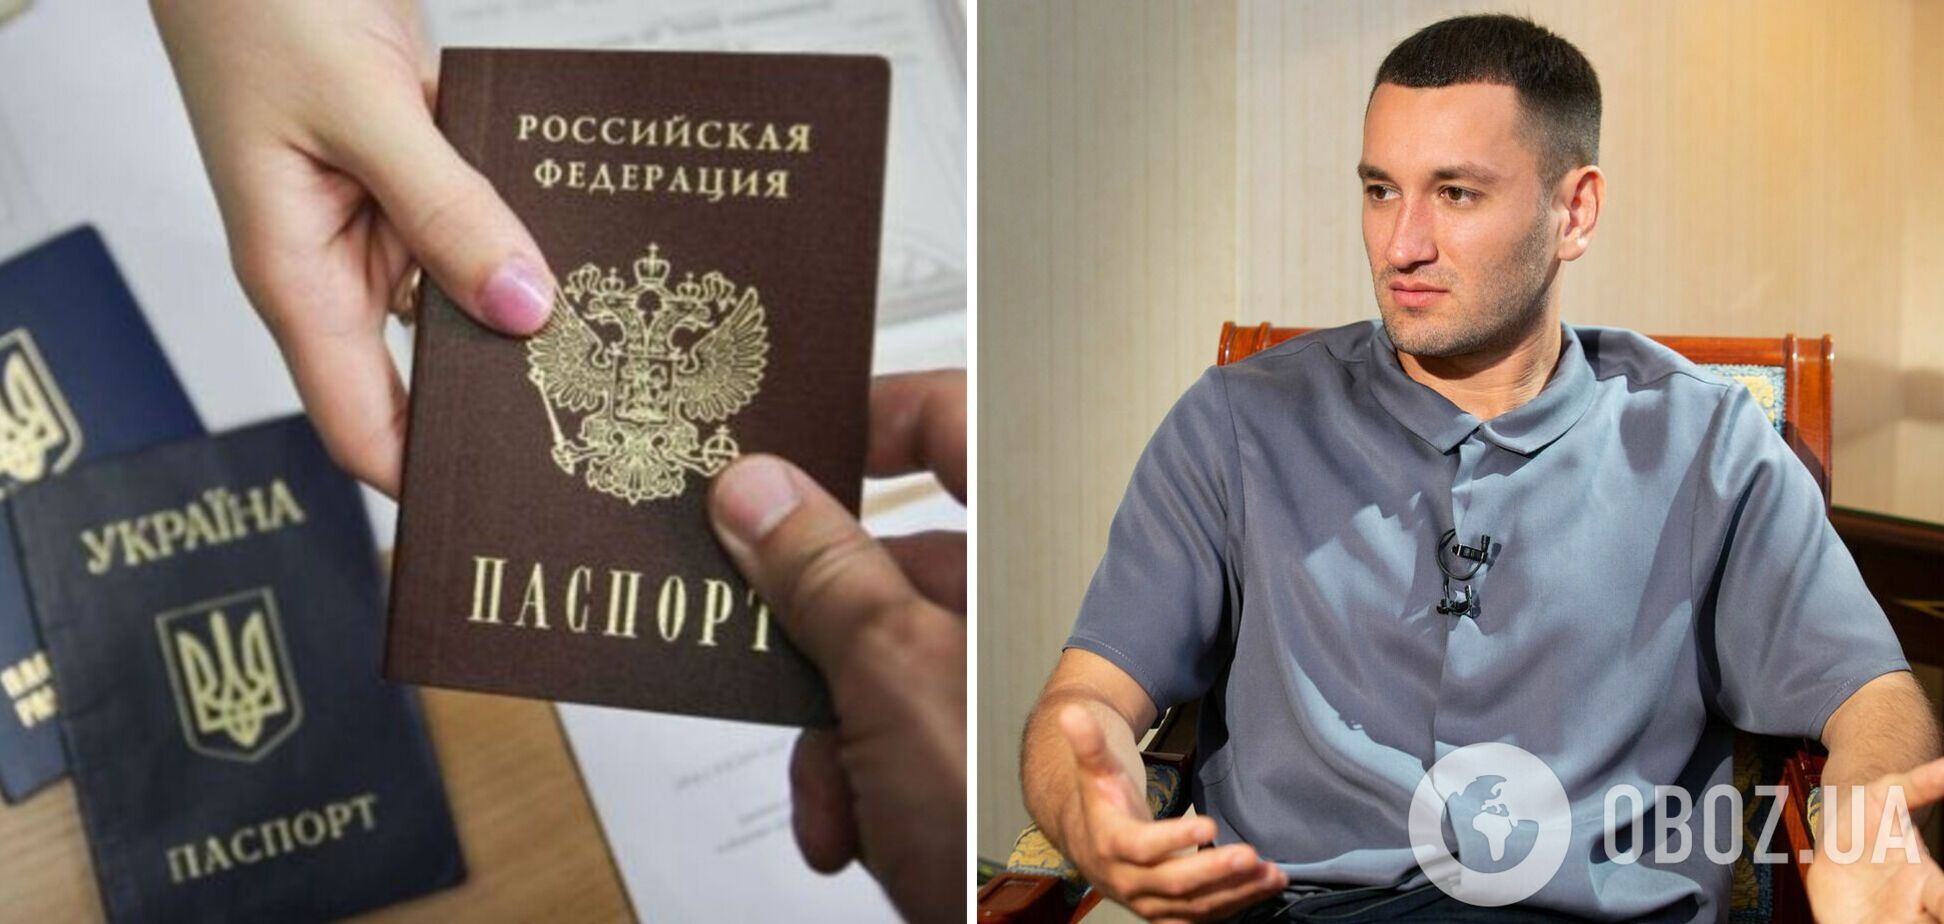 Украинский продюсер Бардаш получит 'русский паспорт' и сменит имя